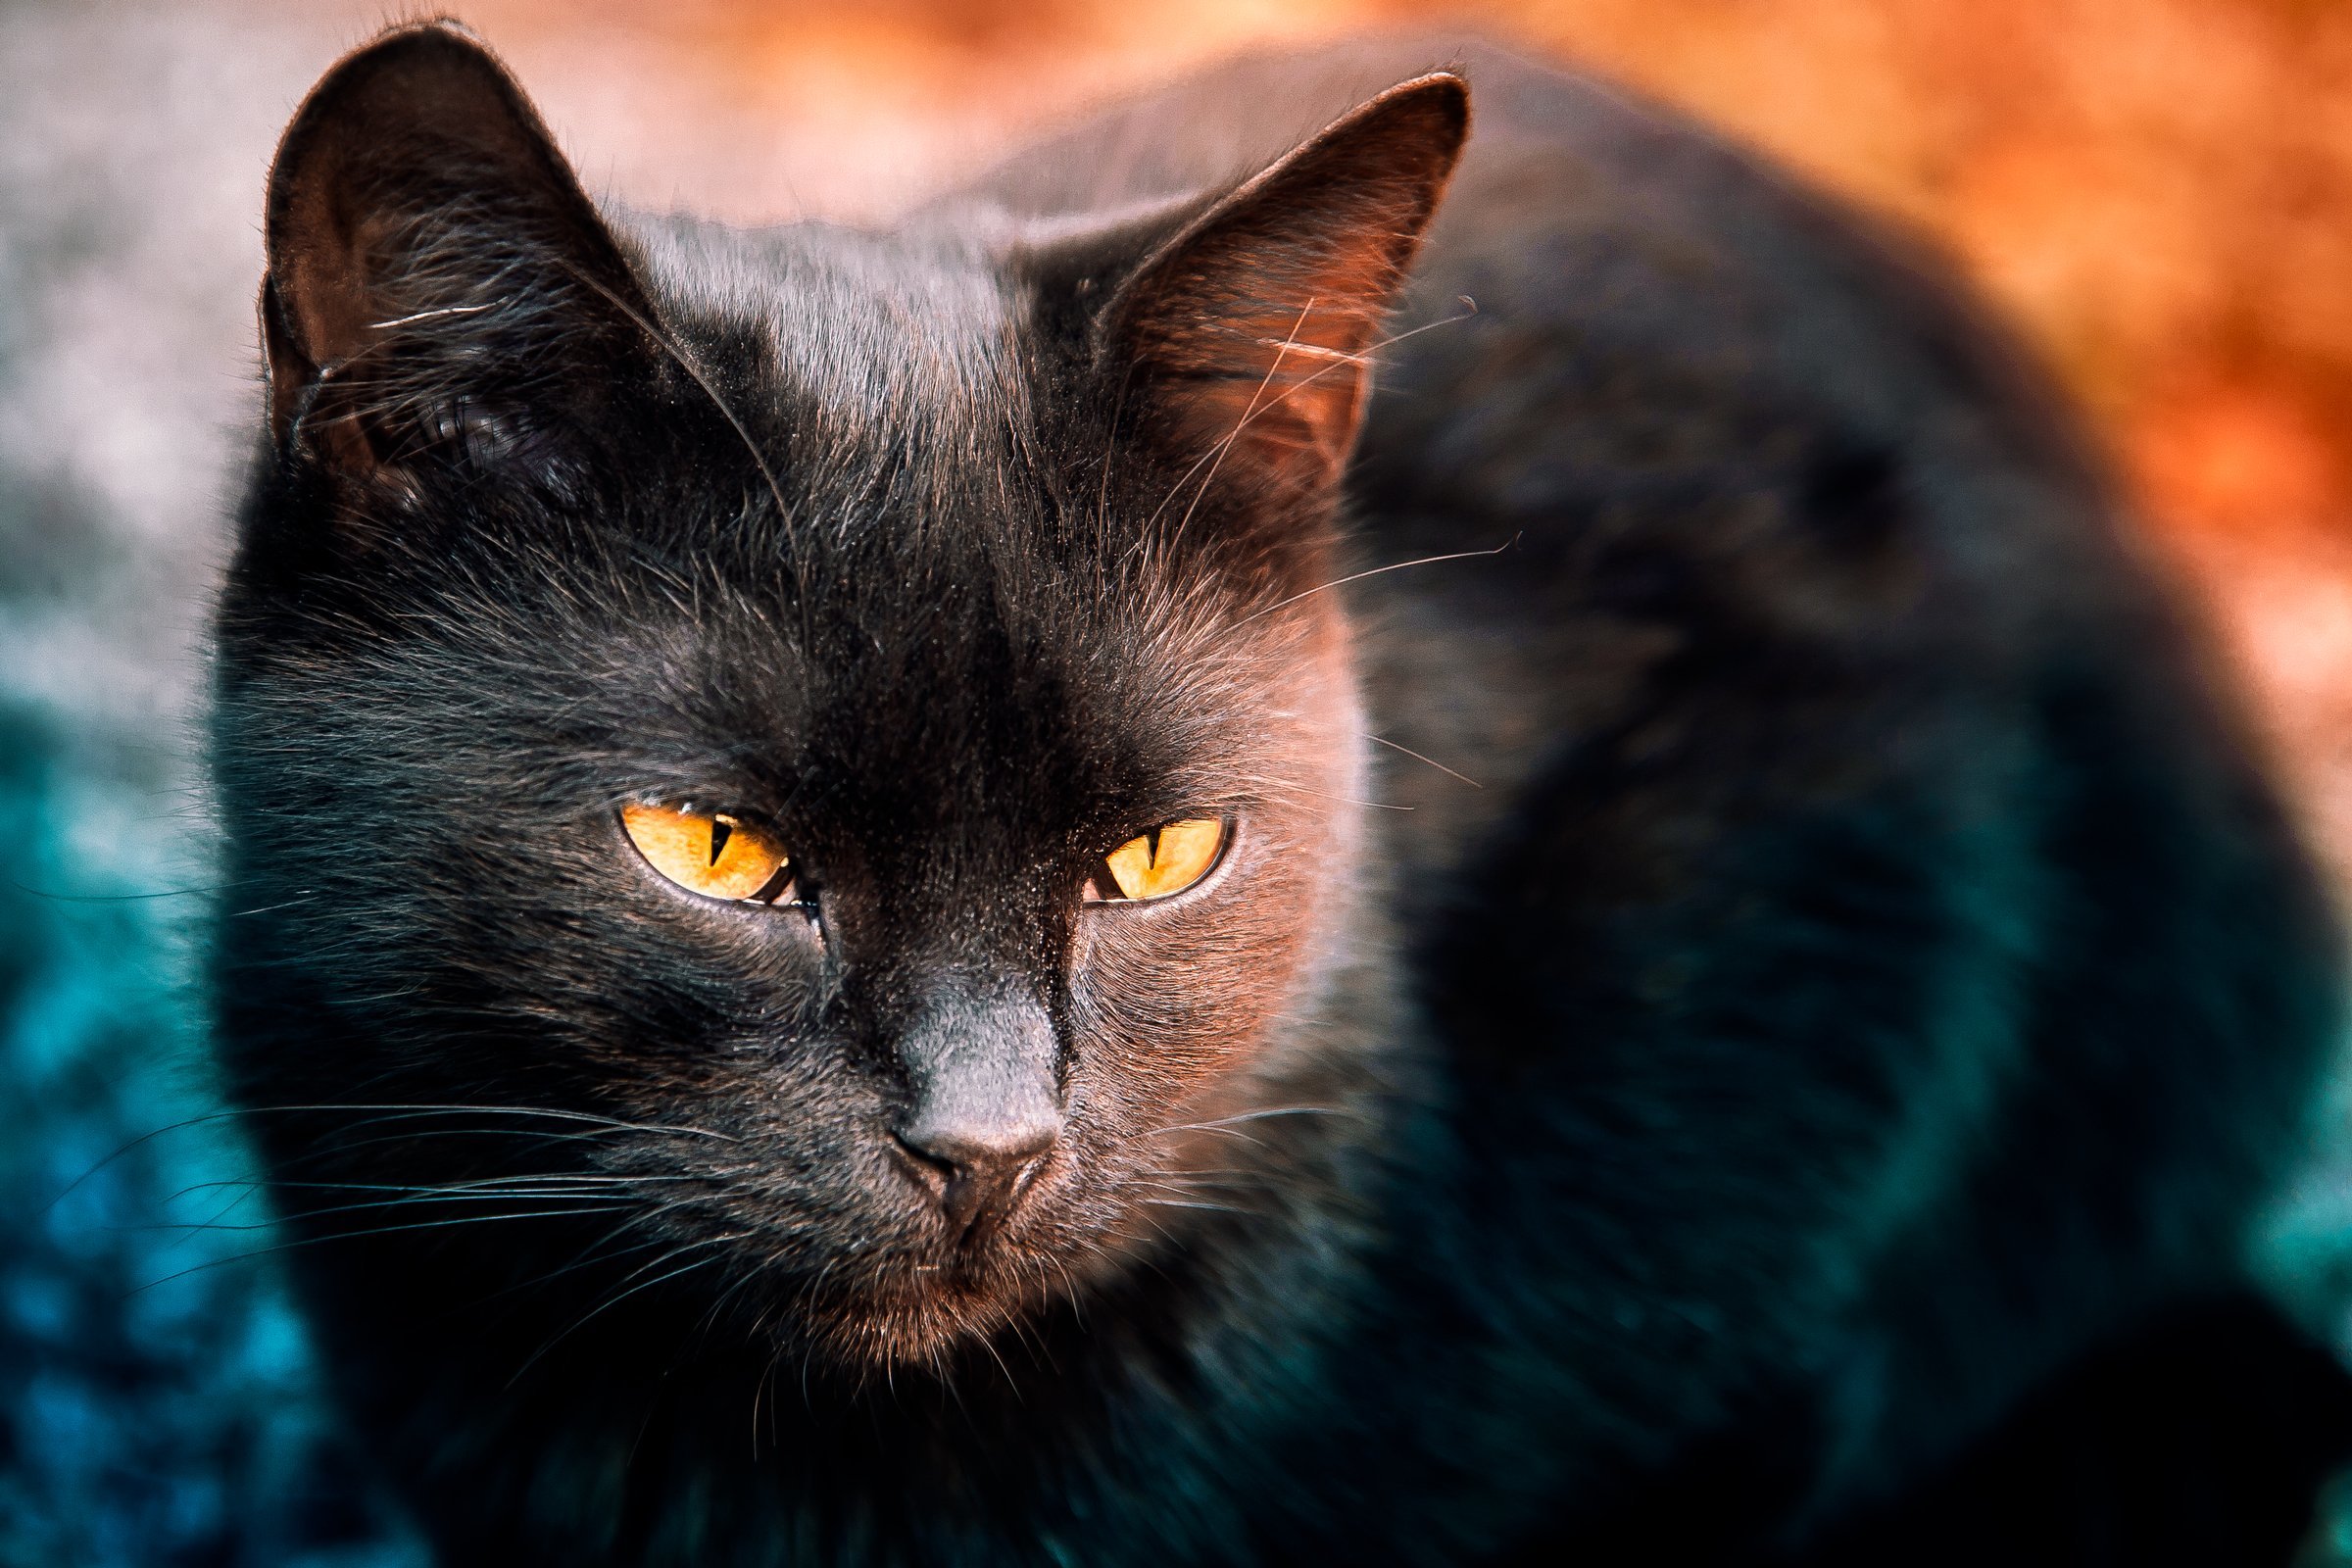 Image: Cat, muzzle, black eyes, yellow